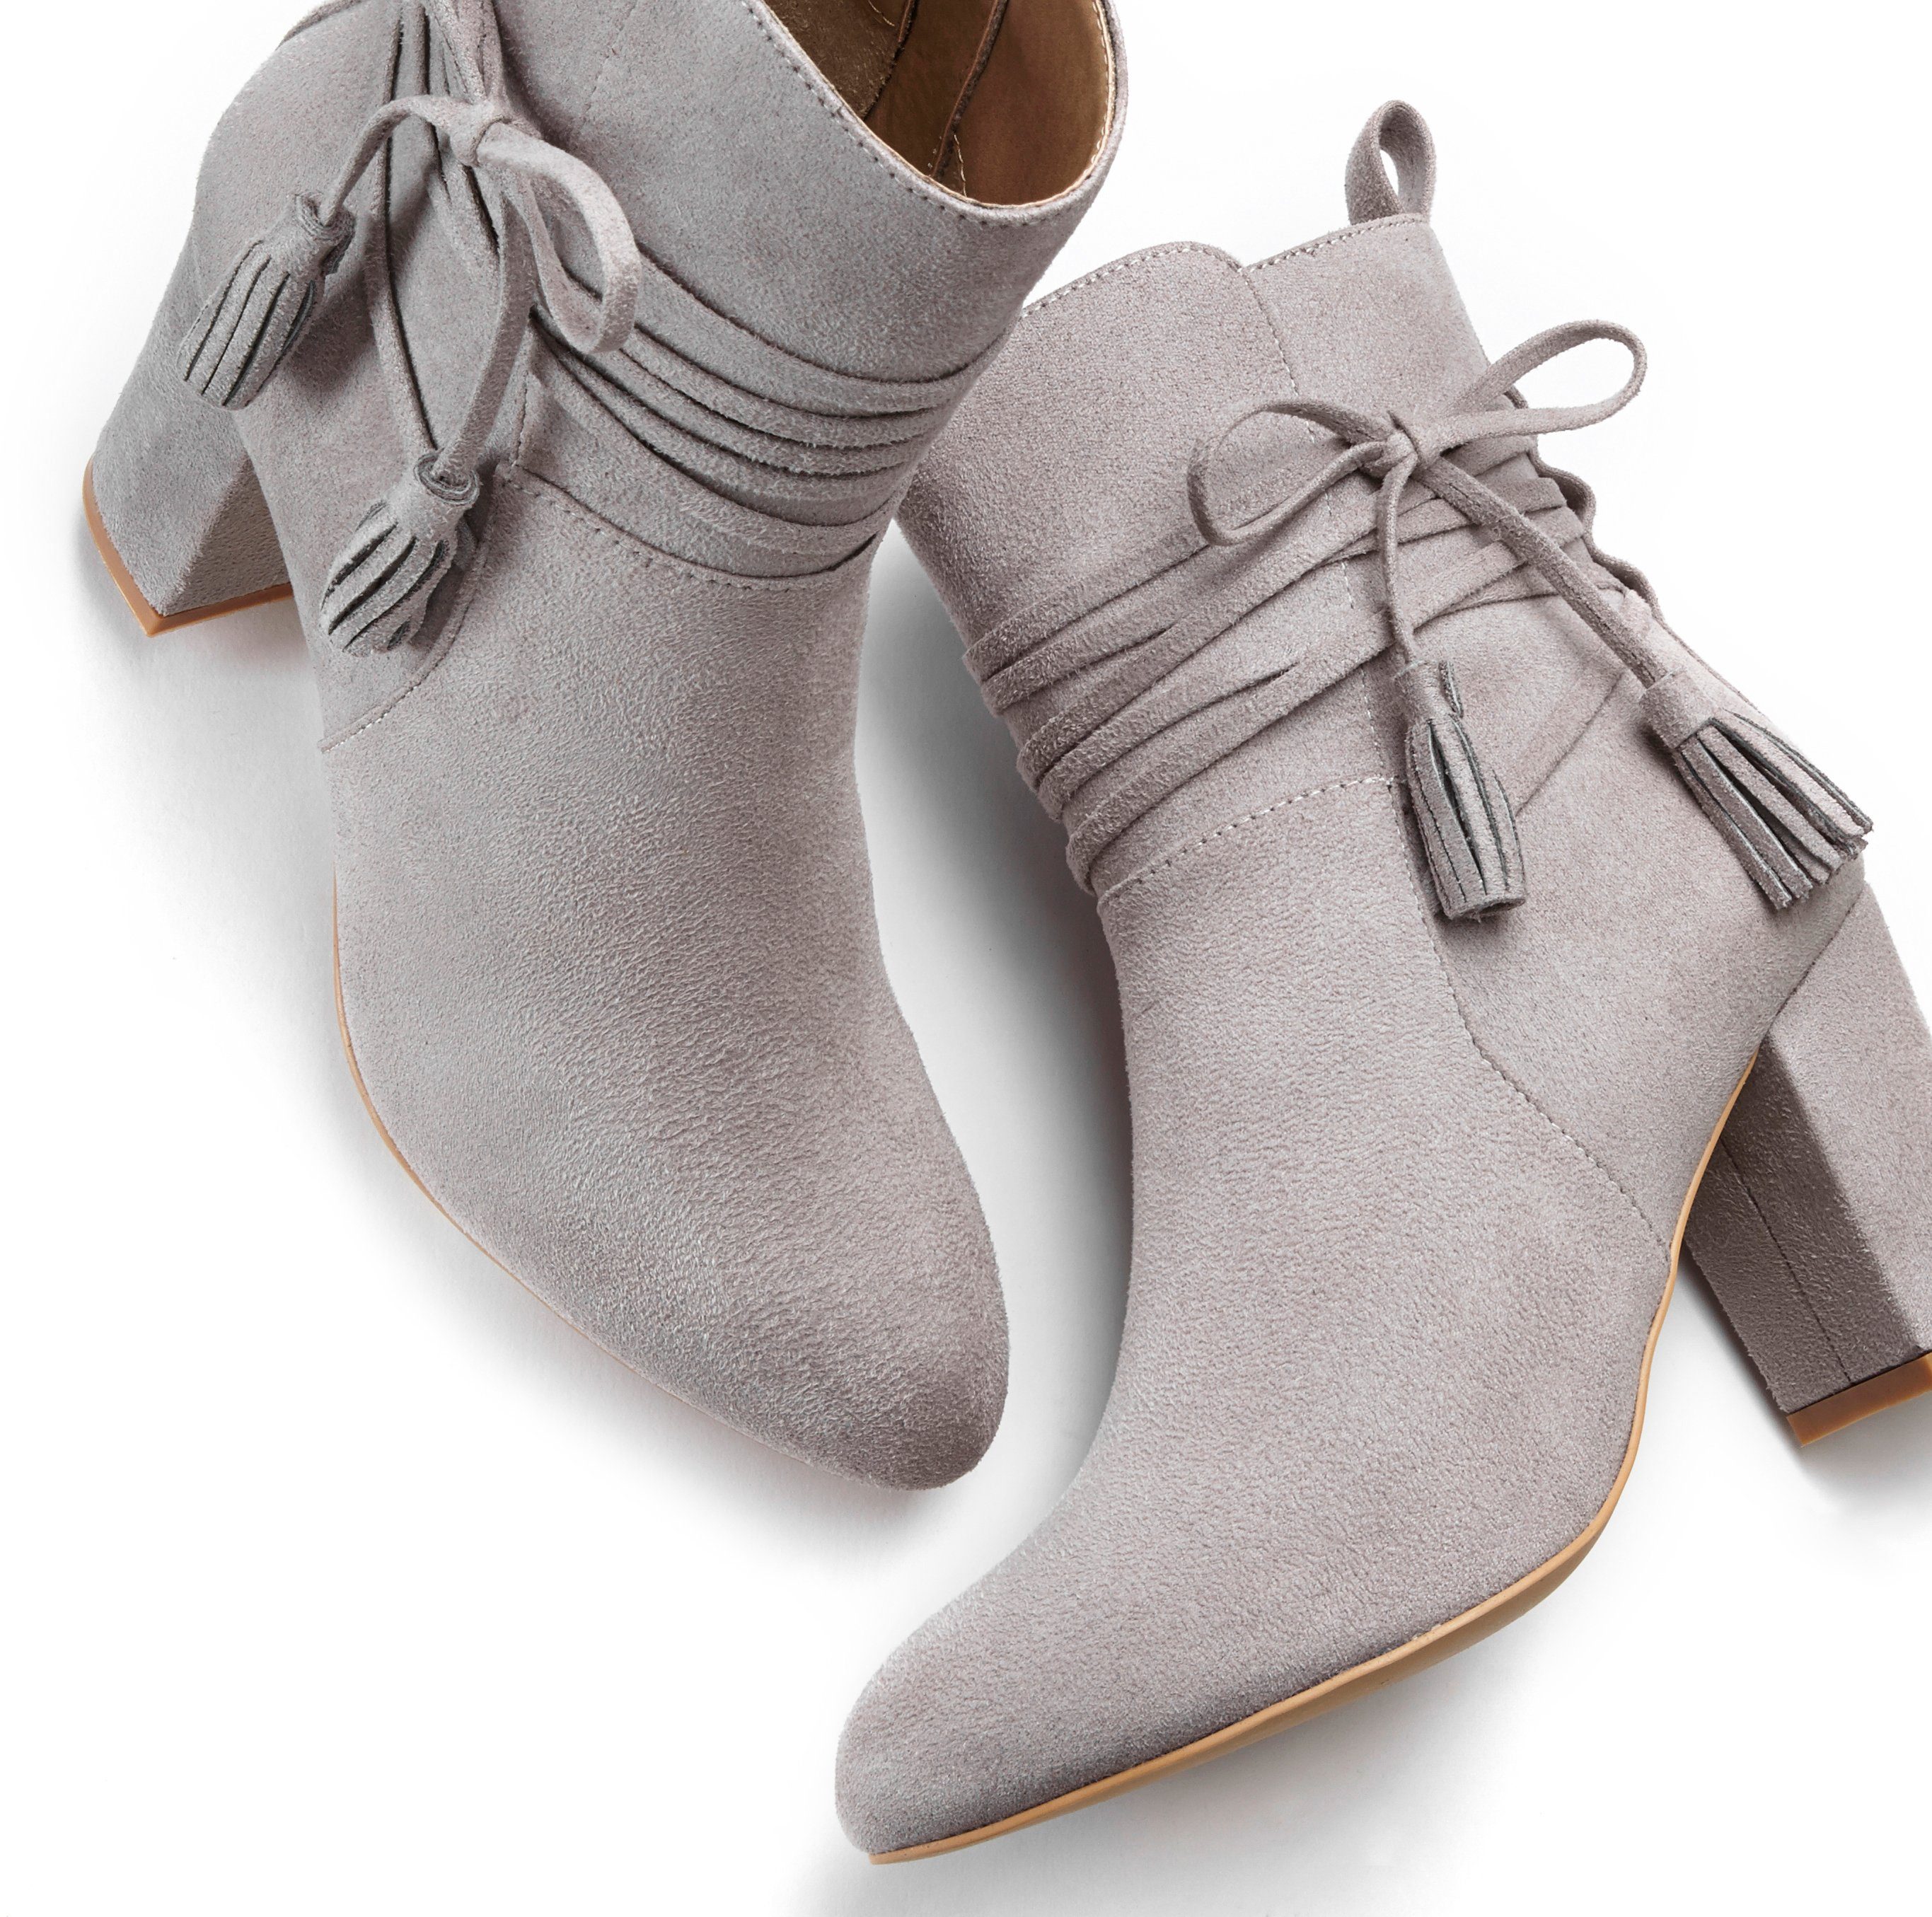 hellgrau Stiefelette High-Heel-Stiefelette, Boots, Ankle Stiefel mit Blockabsatz, LASCANA